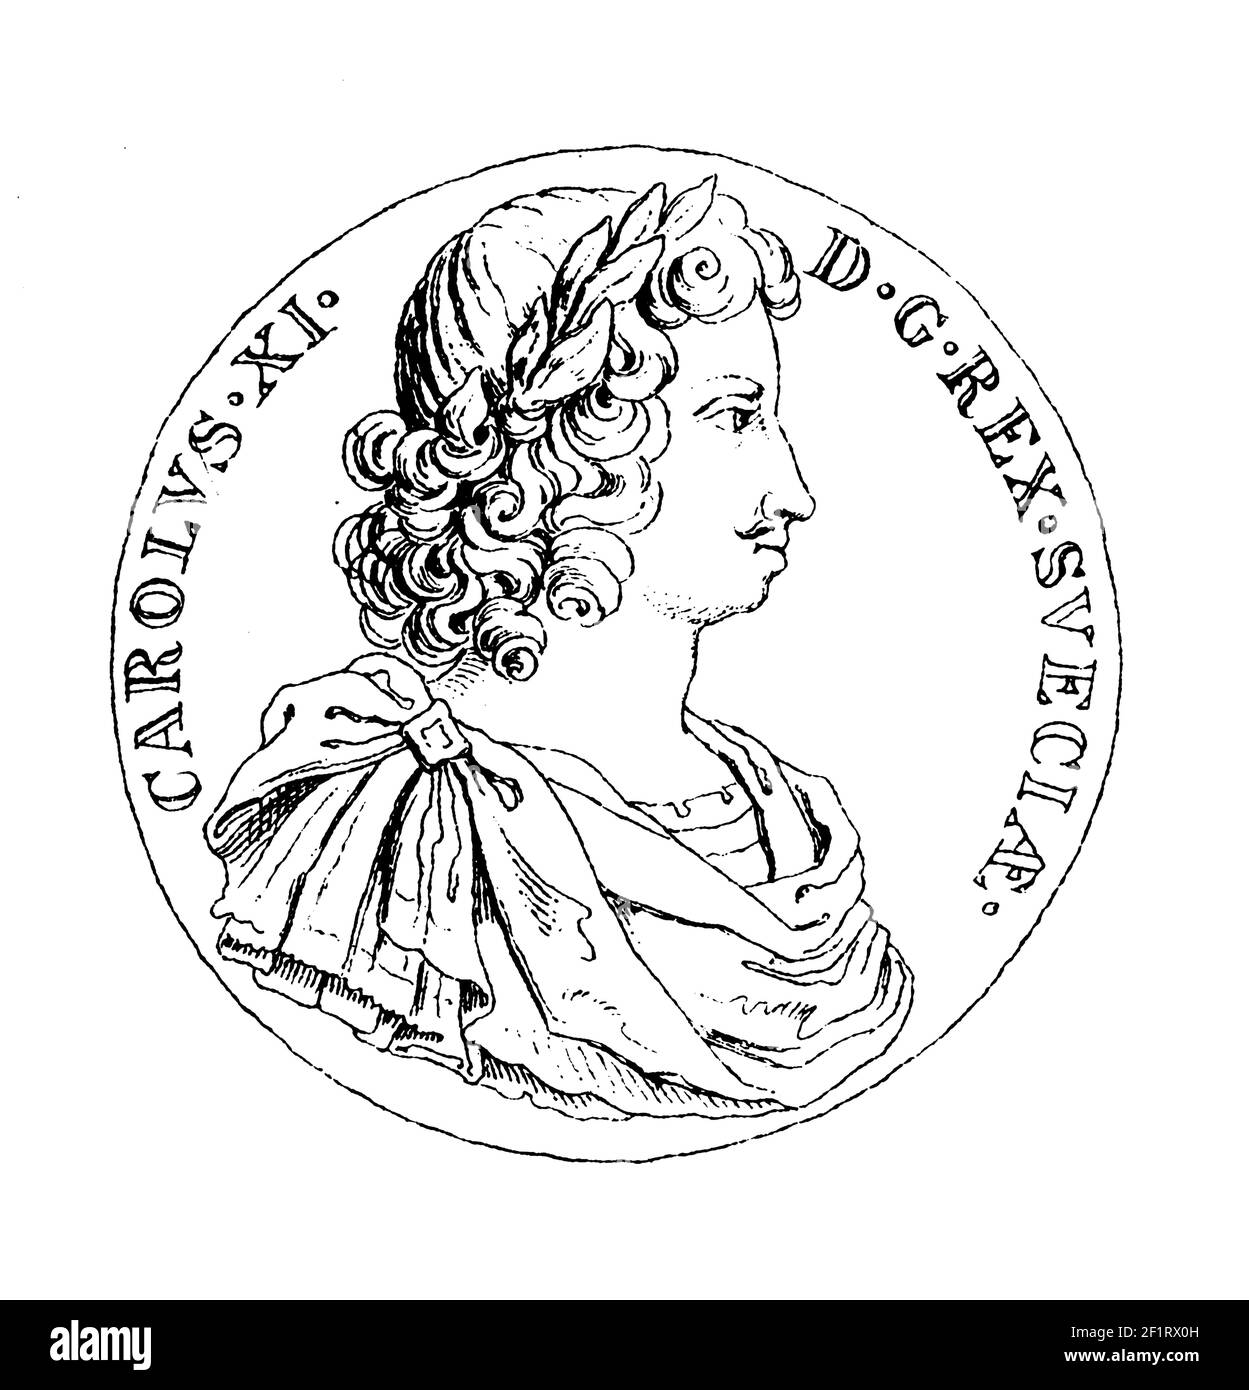 Grabado del siglo 19th de un retrato de Carlos XI, Rey de Suecia. Nació el 24 de noviembre de 1655 en Estocolmo, Suecia y murió el 5 de abril de 1697 in Foto de stock